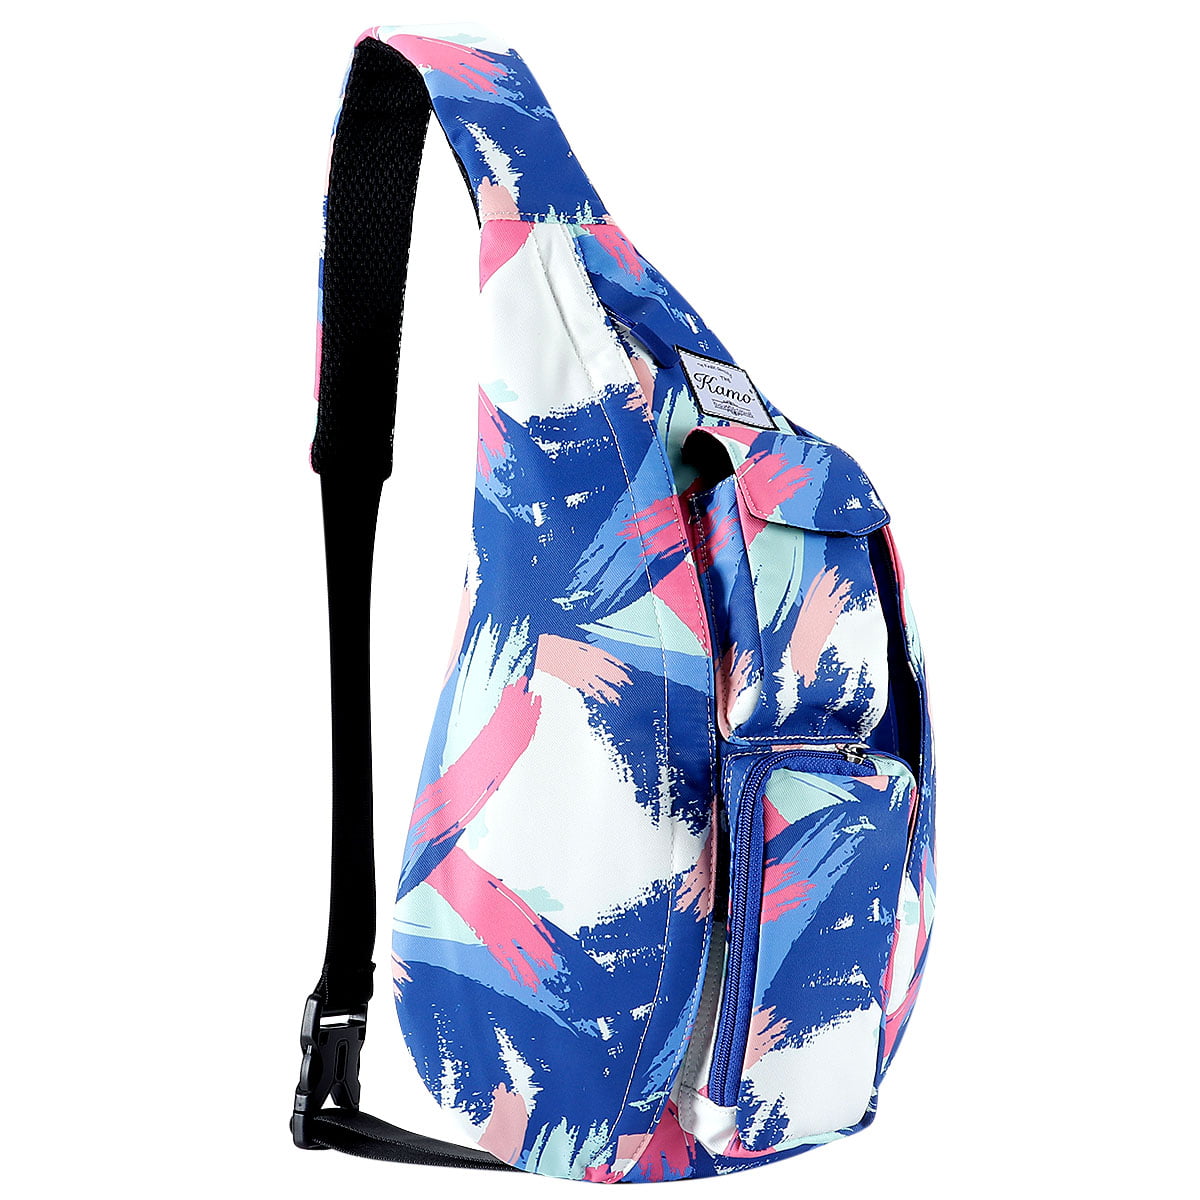 Rope Bag Crossbody Backpack Travel Multipurpose Daypacks for Men Women Lady Girl Teens KAMO Sling Backpack 